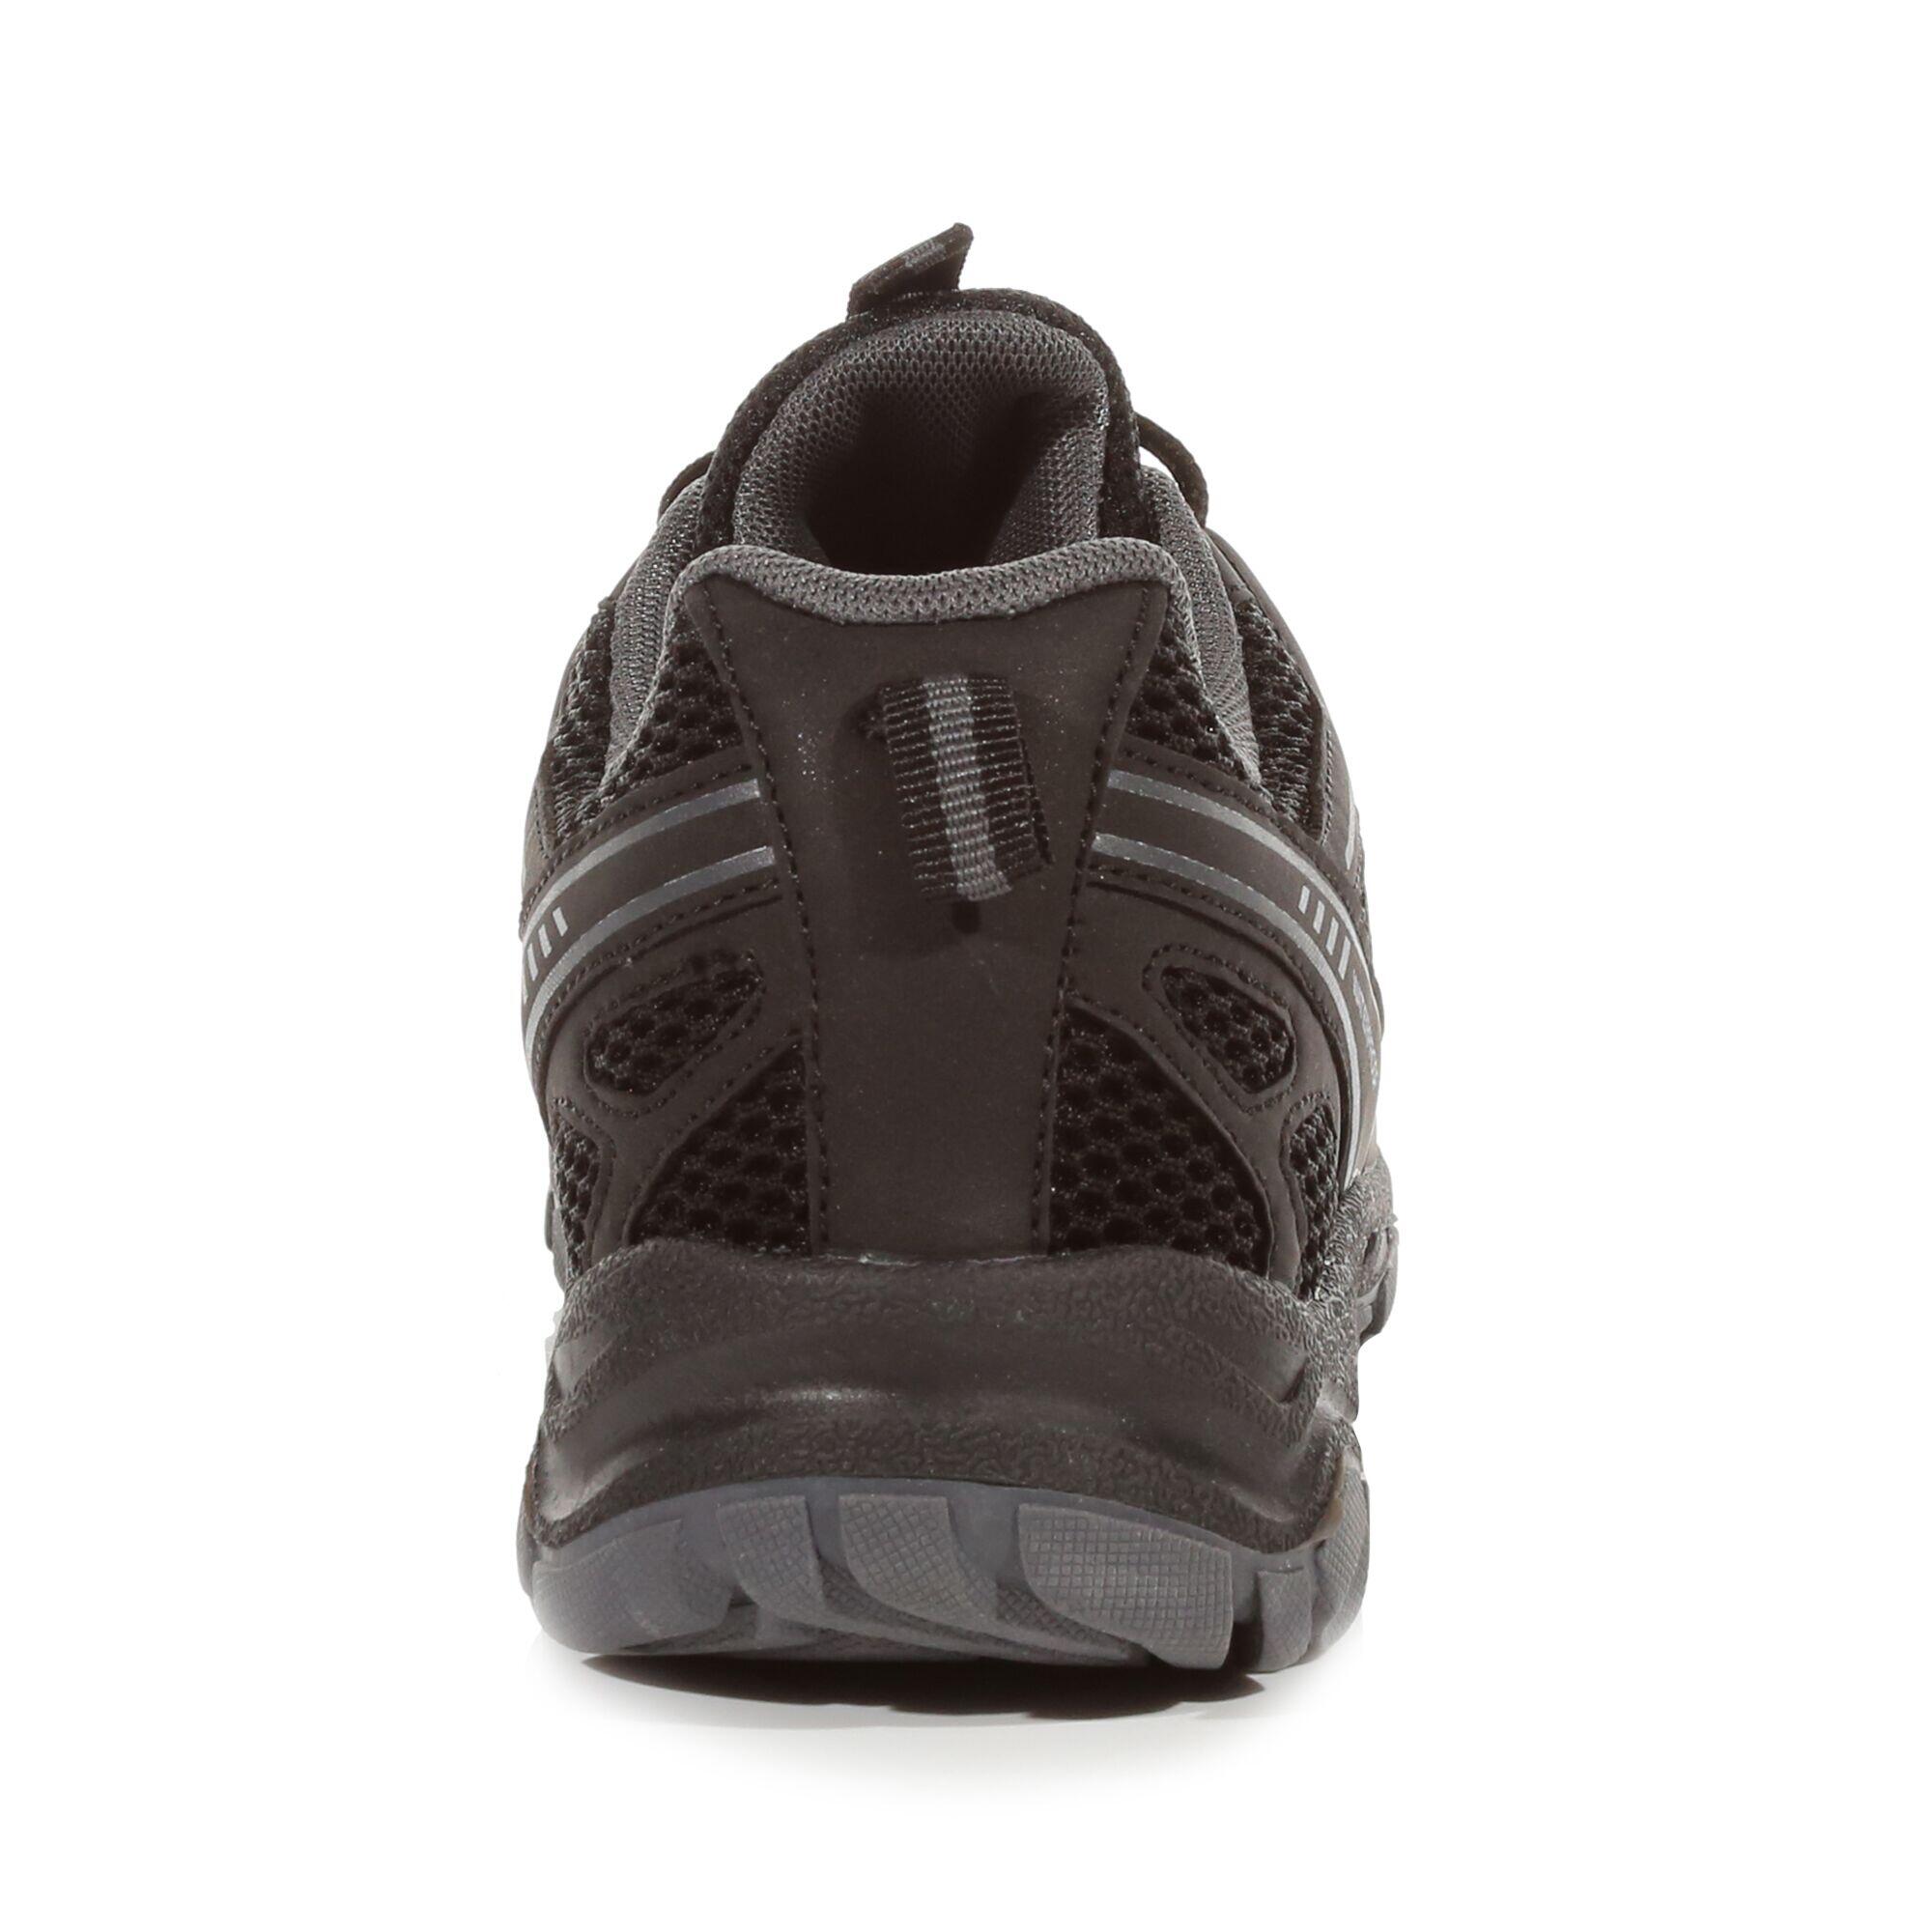 Vendeavour Men's Fitness Training Shoes 3/6